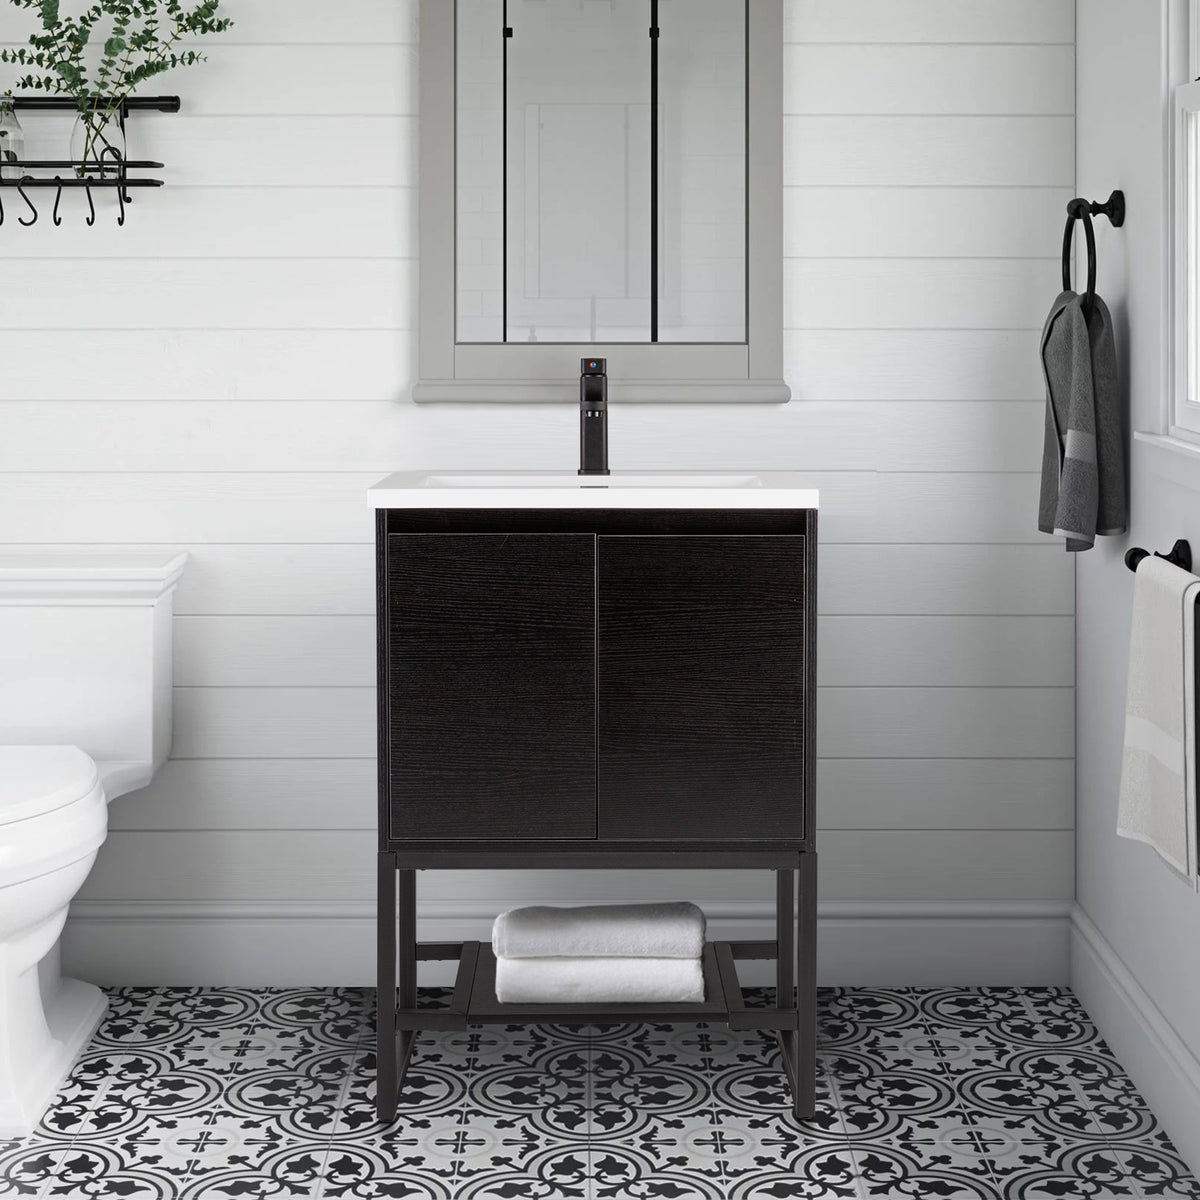 Eclife 24" Black Bathroom Vanity with Undermount Ceramic Sink ,Built-in Power Socket & Metal Feet